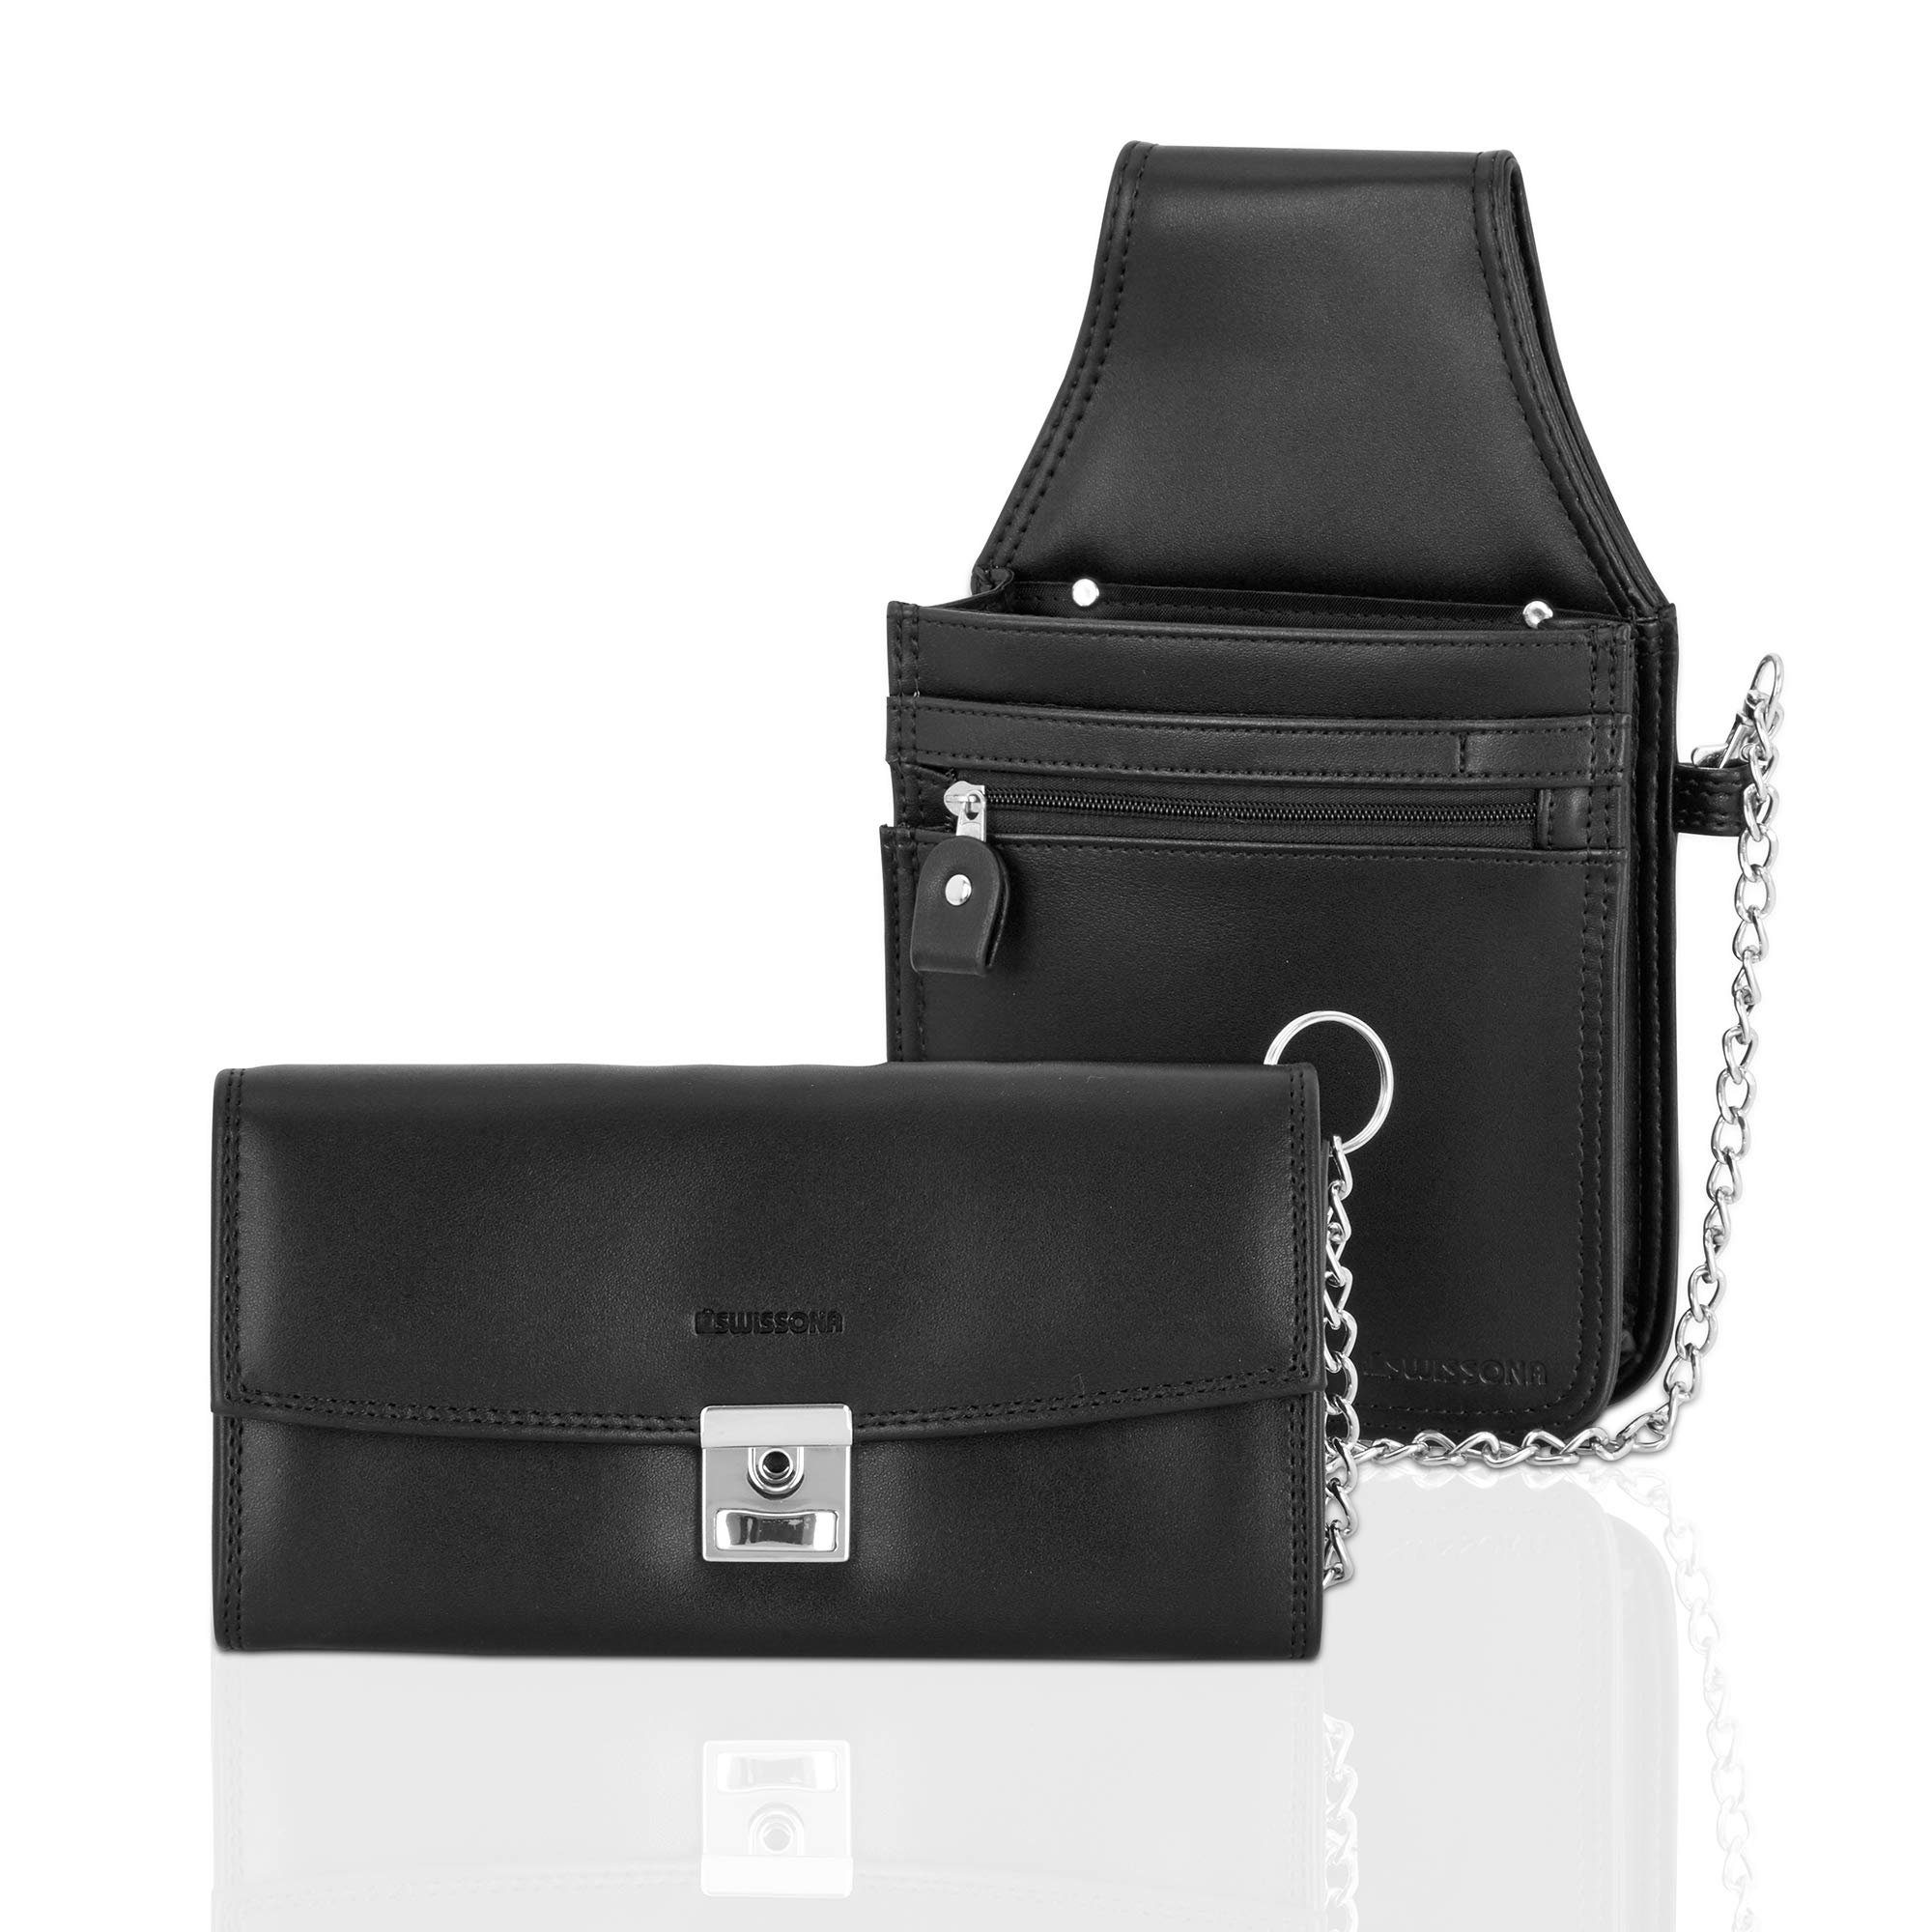 Swissona Clutch Schwarze Geldbörsentasche mit sicherer Kette für Kellner, Kellnertasche mit Kette gesichert und Geldbeutel, schwarz